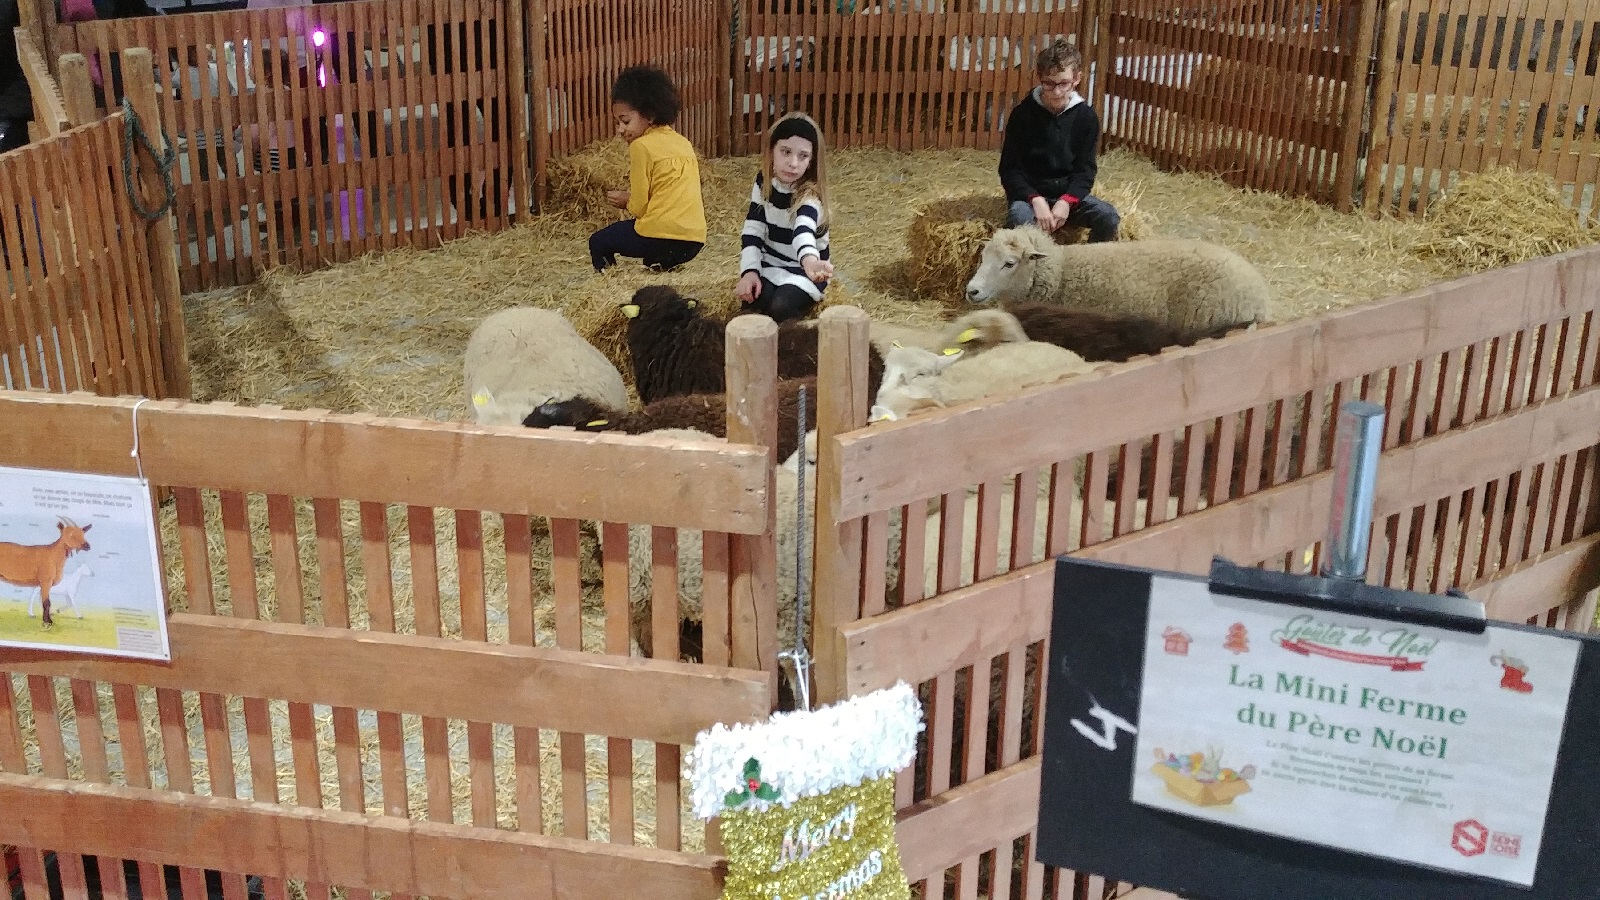 Les animaux de la ferme moutons- animation enfant arbre de noel , family day , theme nature, environement